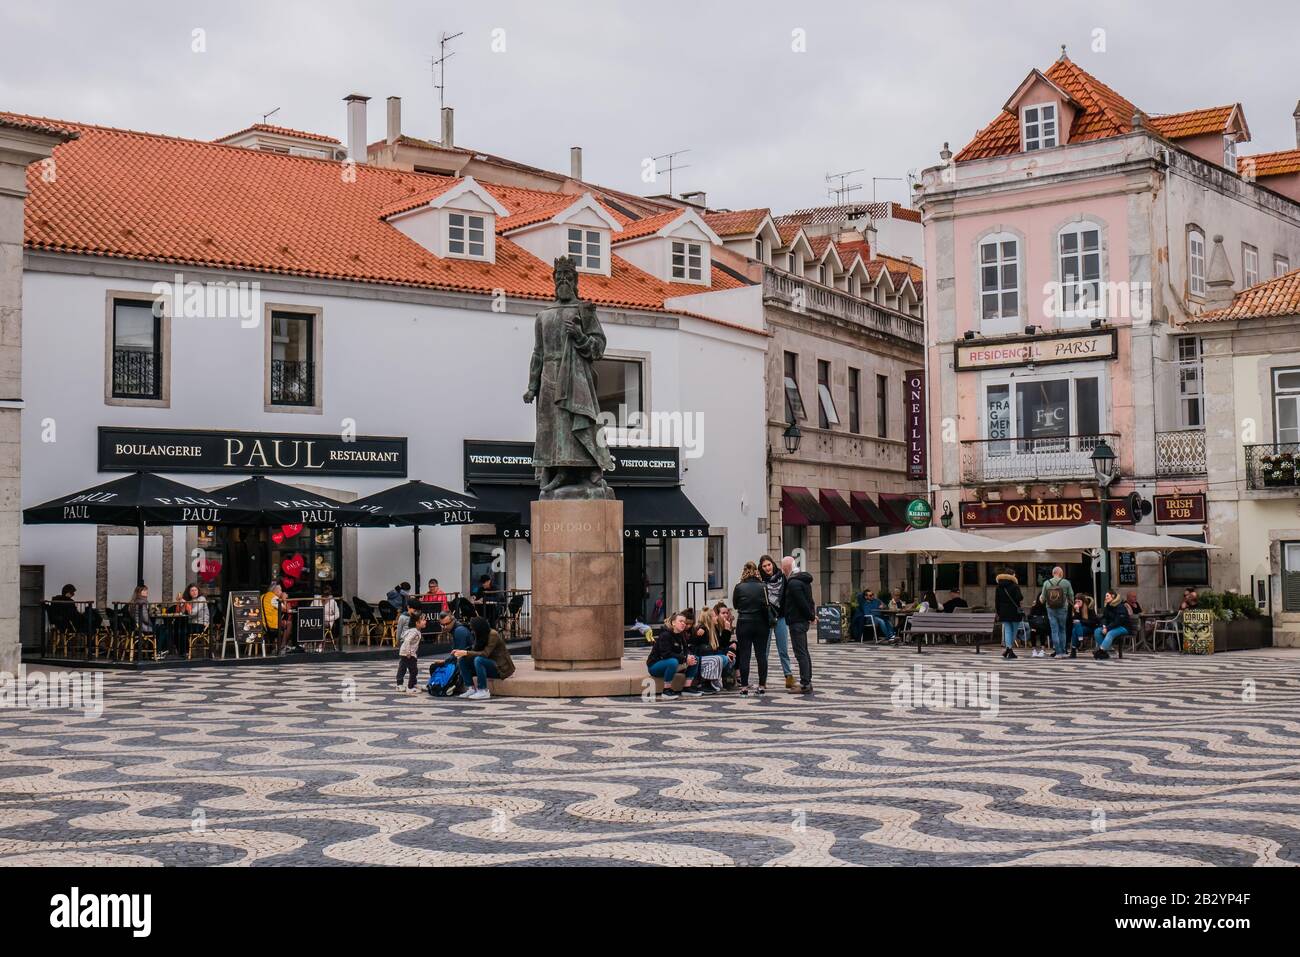 Statua di Dom Pedro i in una piazza pubblica a Cascais, Lisbon disrt, Portogallo Foto Stock